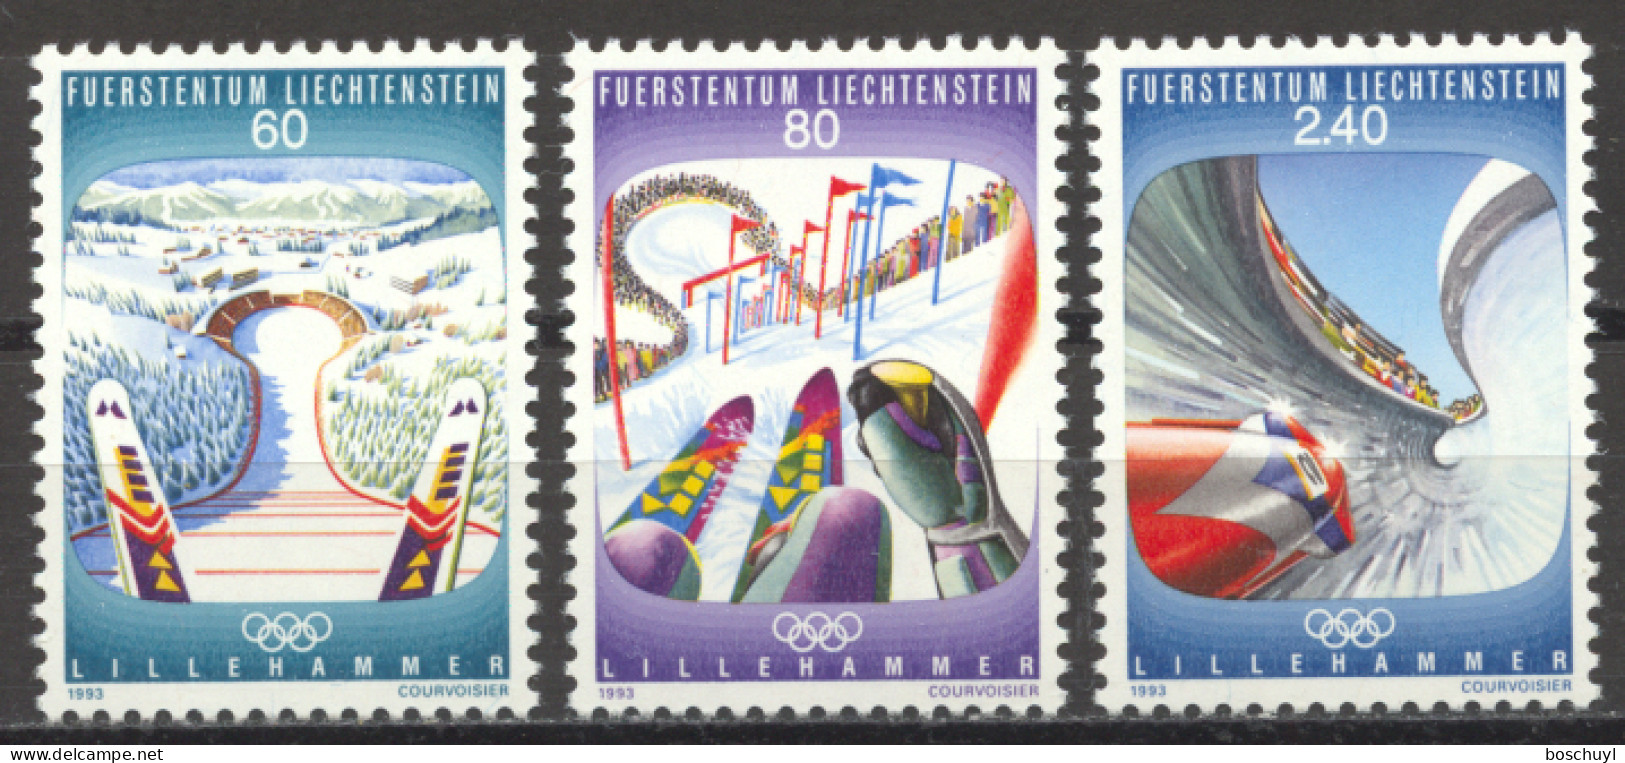 Liechtenstein, 1993, Olympic Winter Games Lillehammer, Sports, MNH, Michel 1076-1078 - Neufs